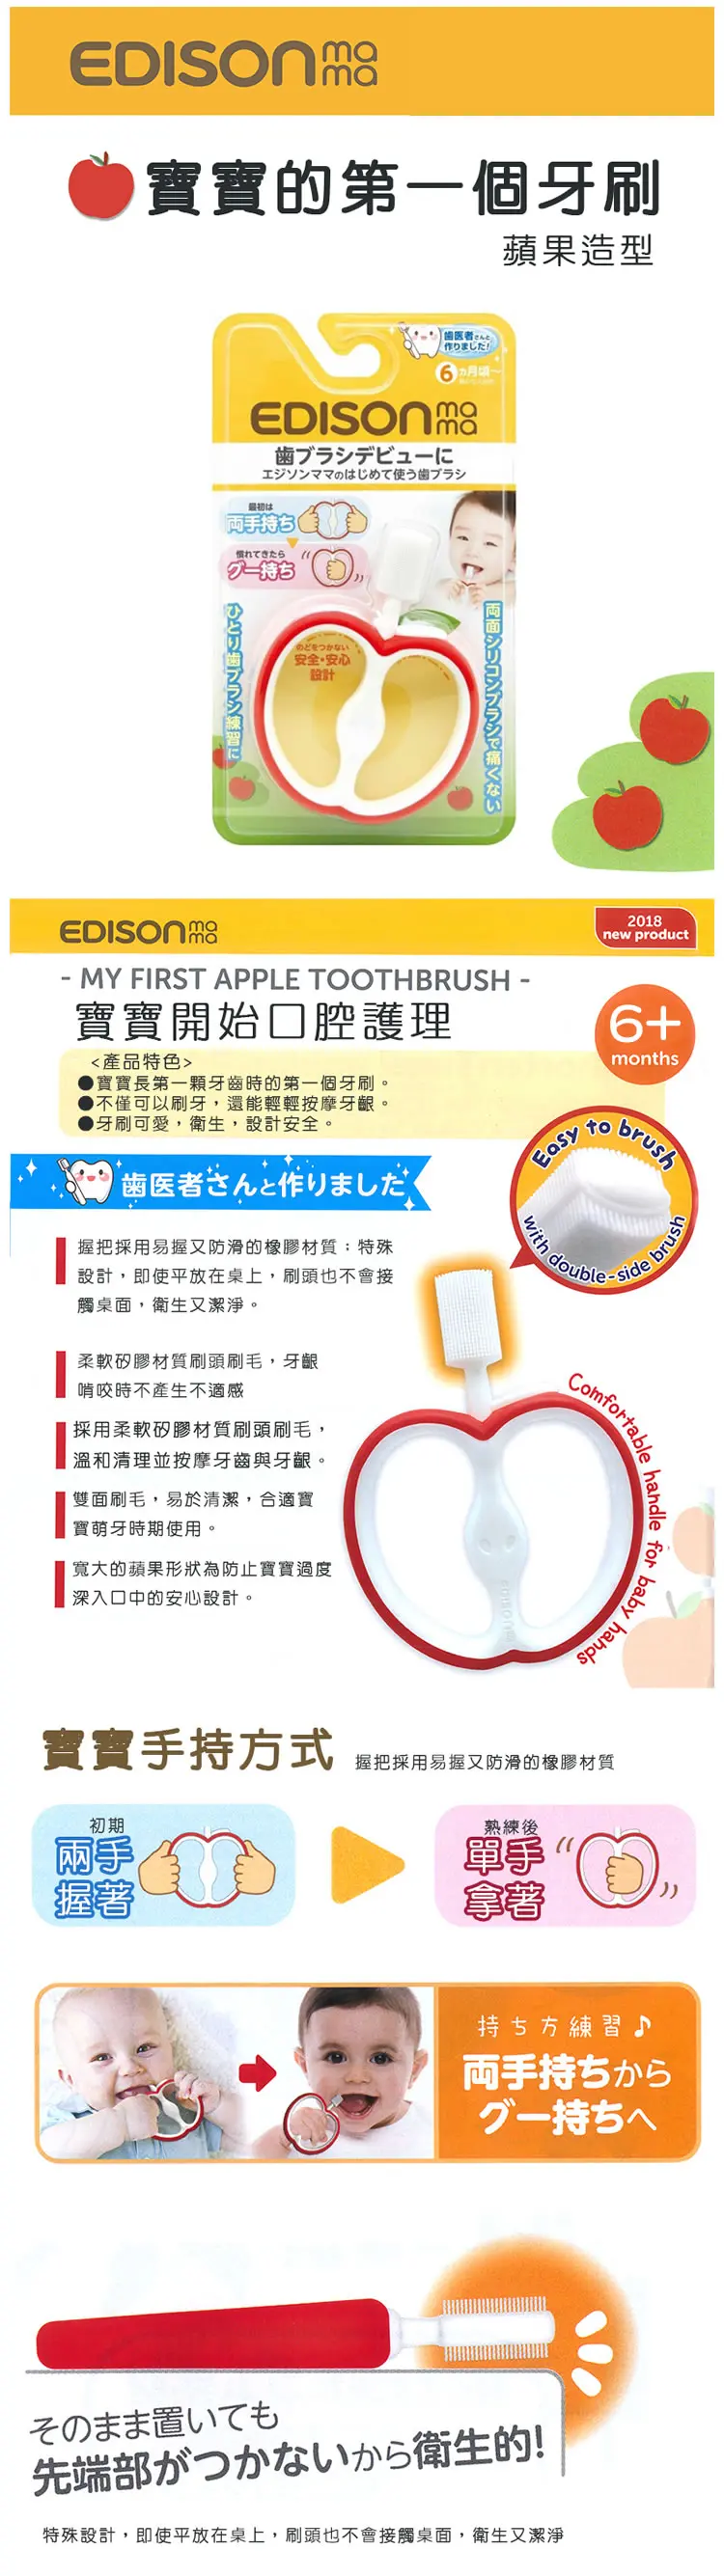 Edison 寶寶的第一個牙刷-蘋果型